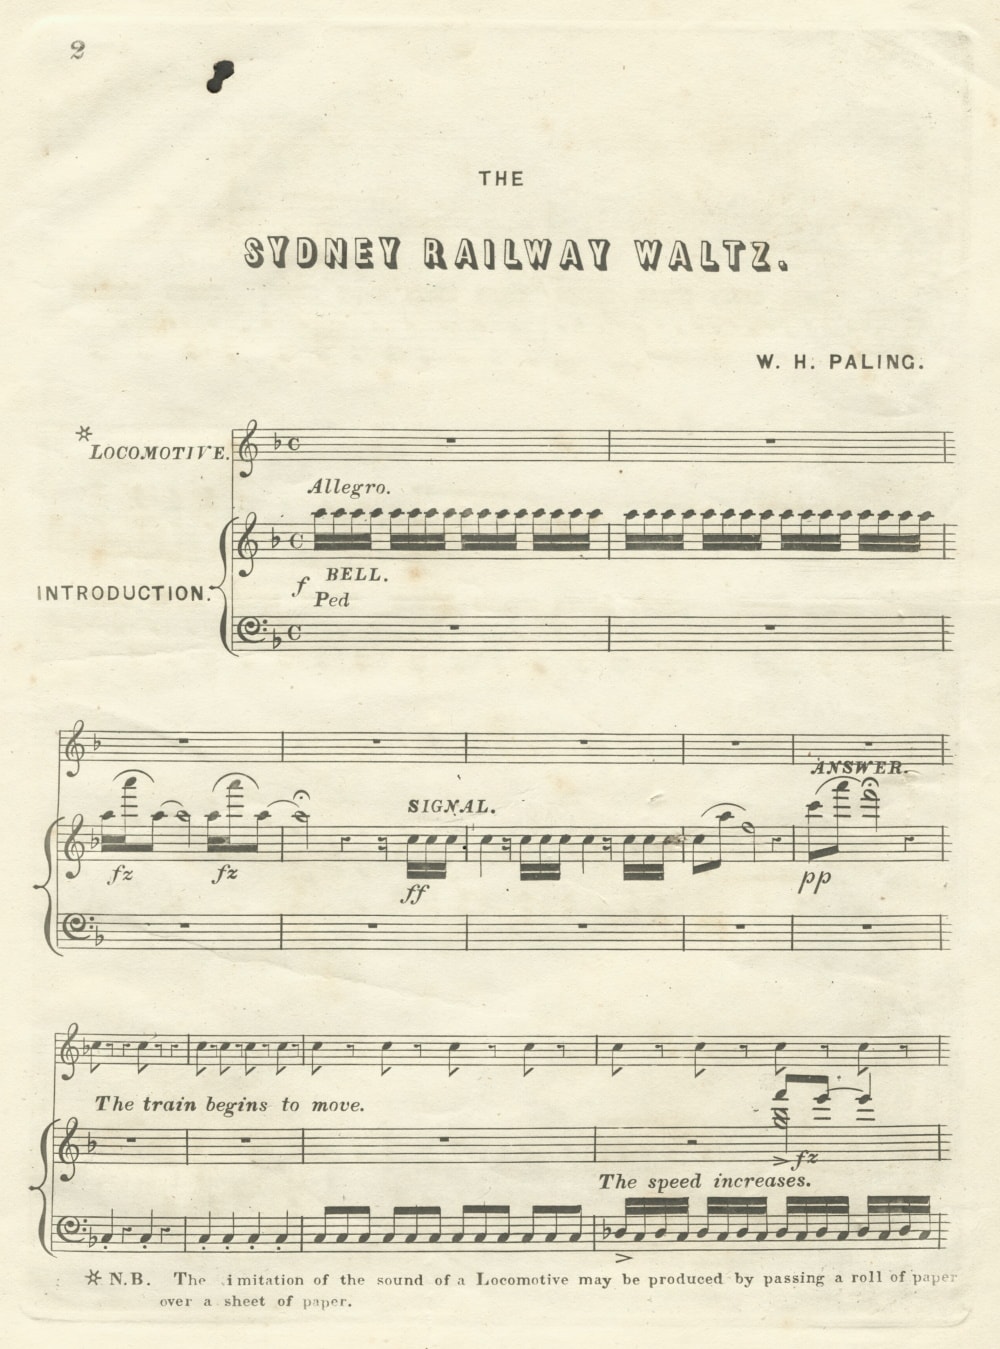 Sydney railway waltz by W. H. Paling 1855